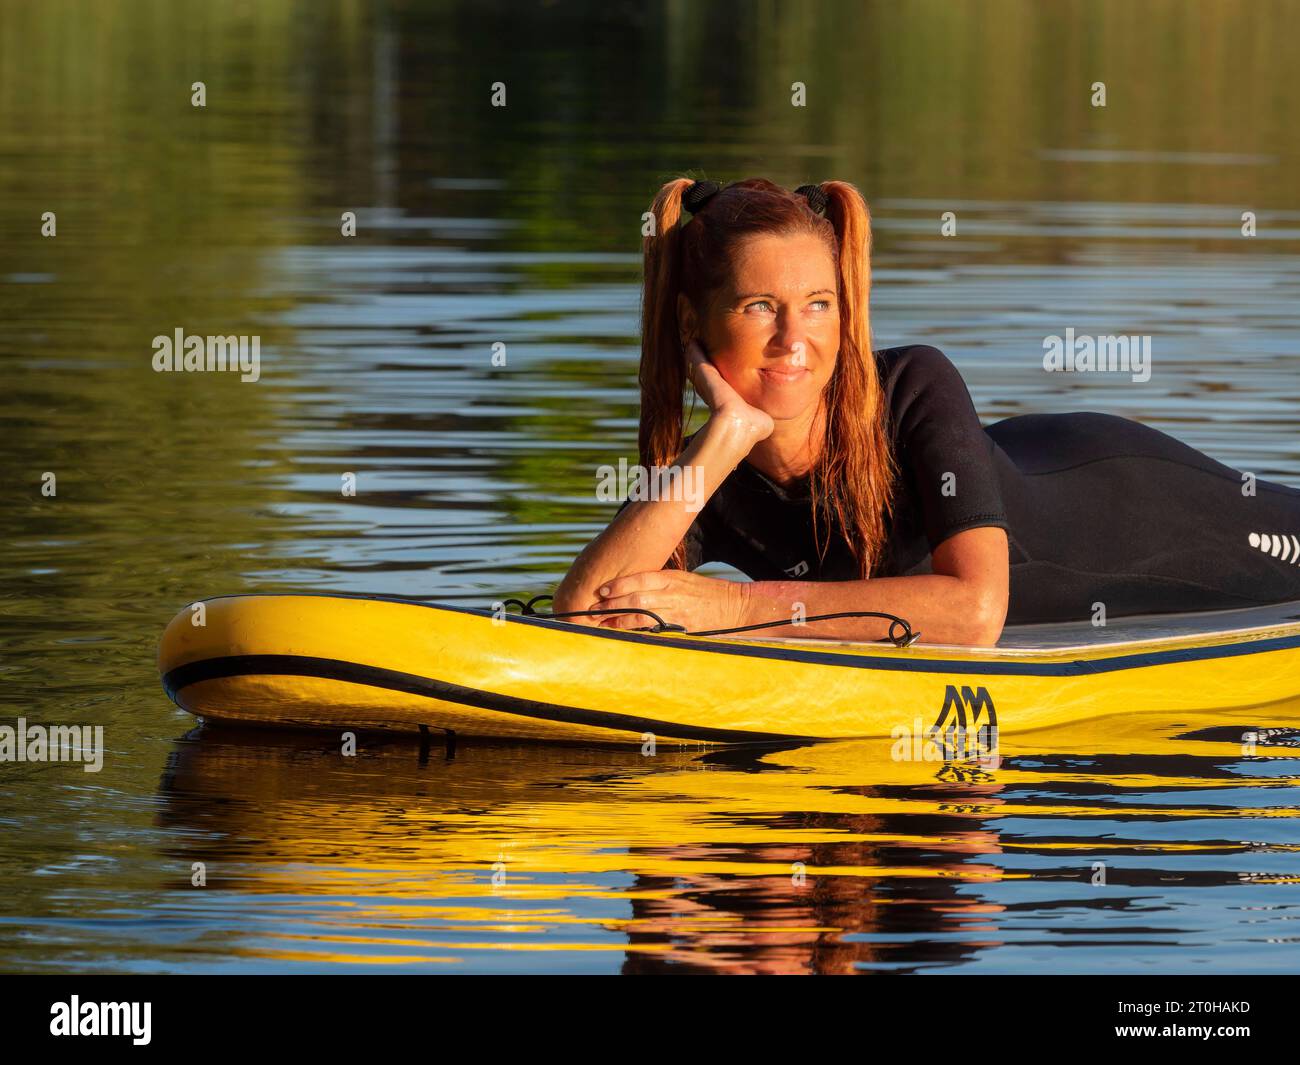 Frau, die entspannt auf dem Stand-up-Paddle-Board im See liegt Stockfoto